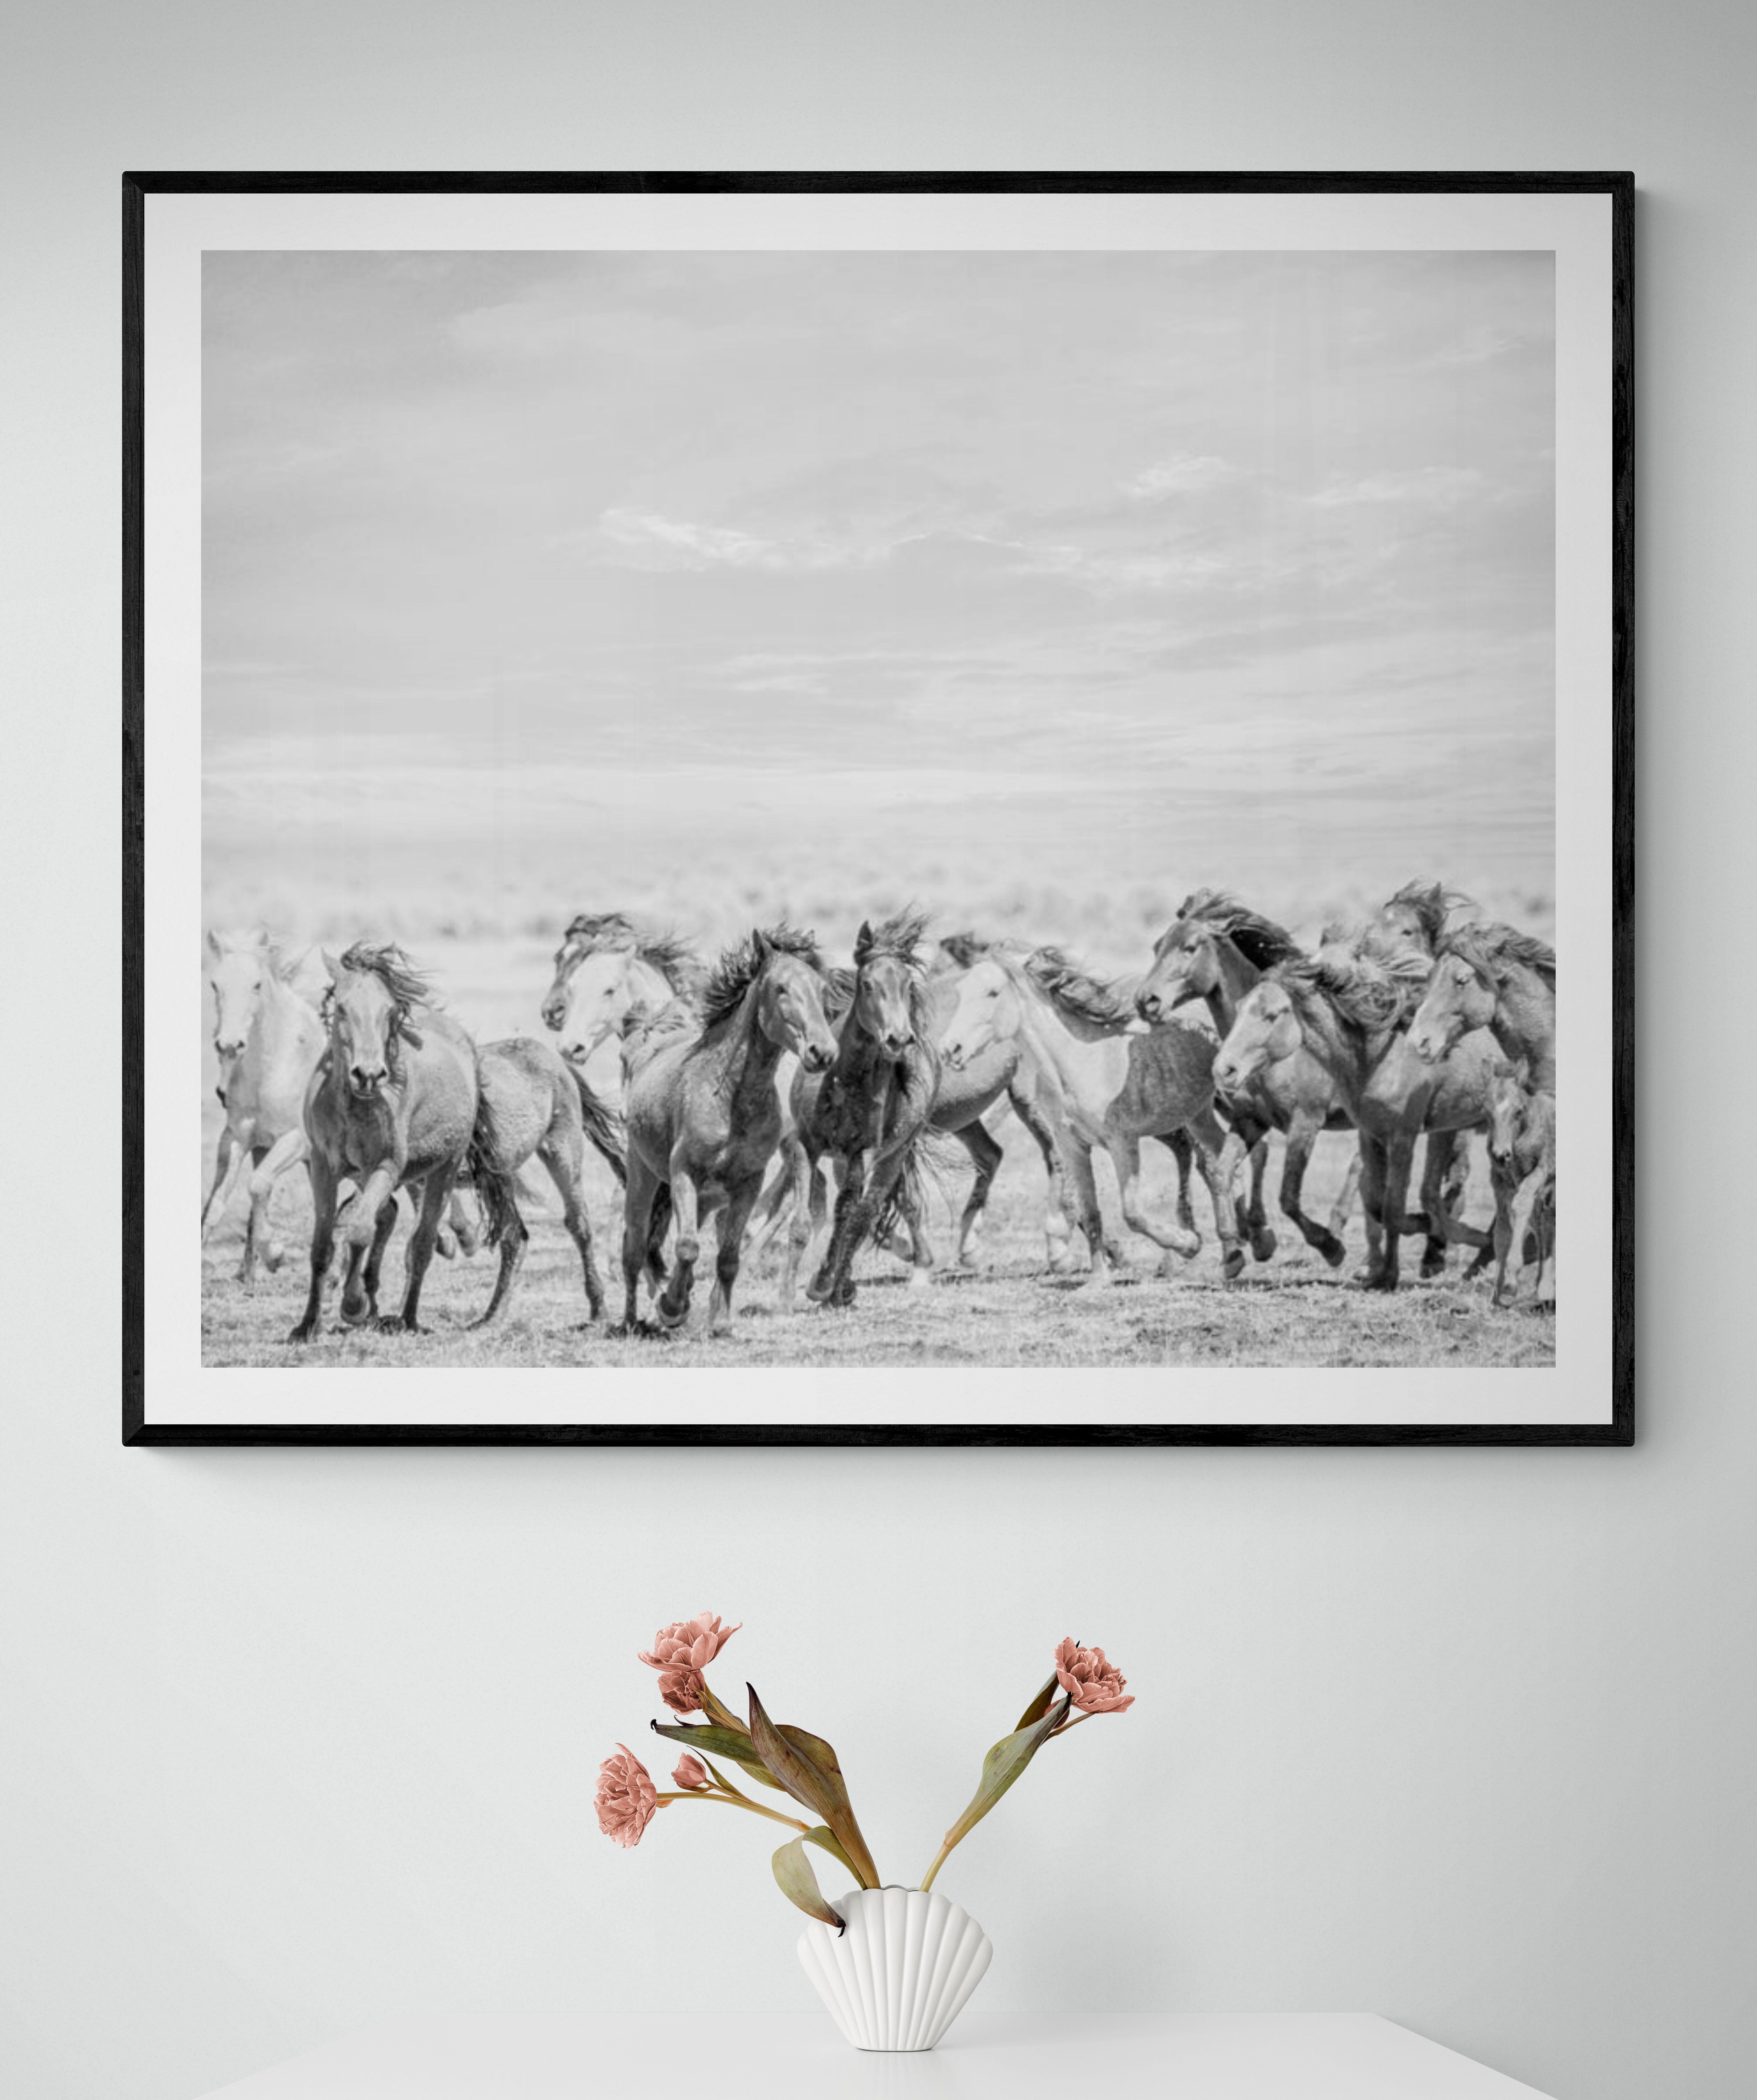 Dies ist eine zeitgenössische Schwarz-Weiß-Fotografie von Wildpferden. 
